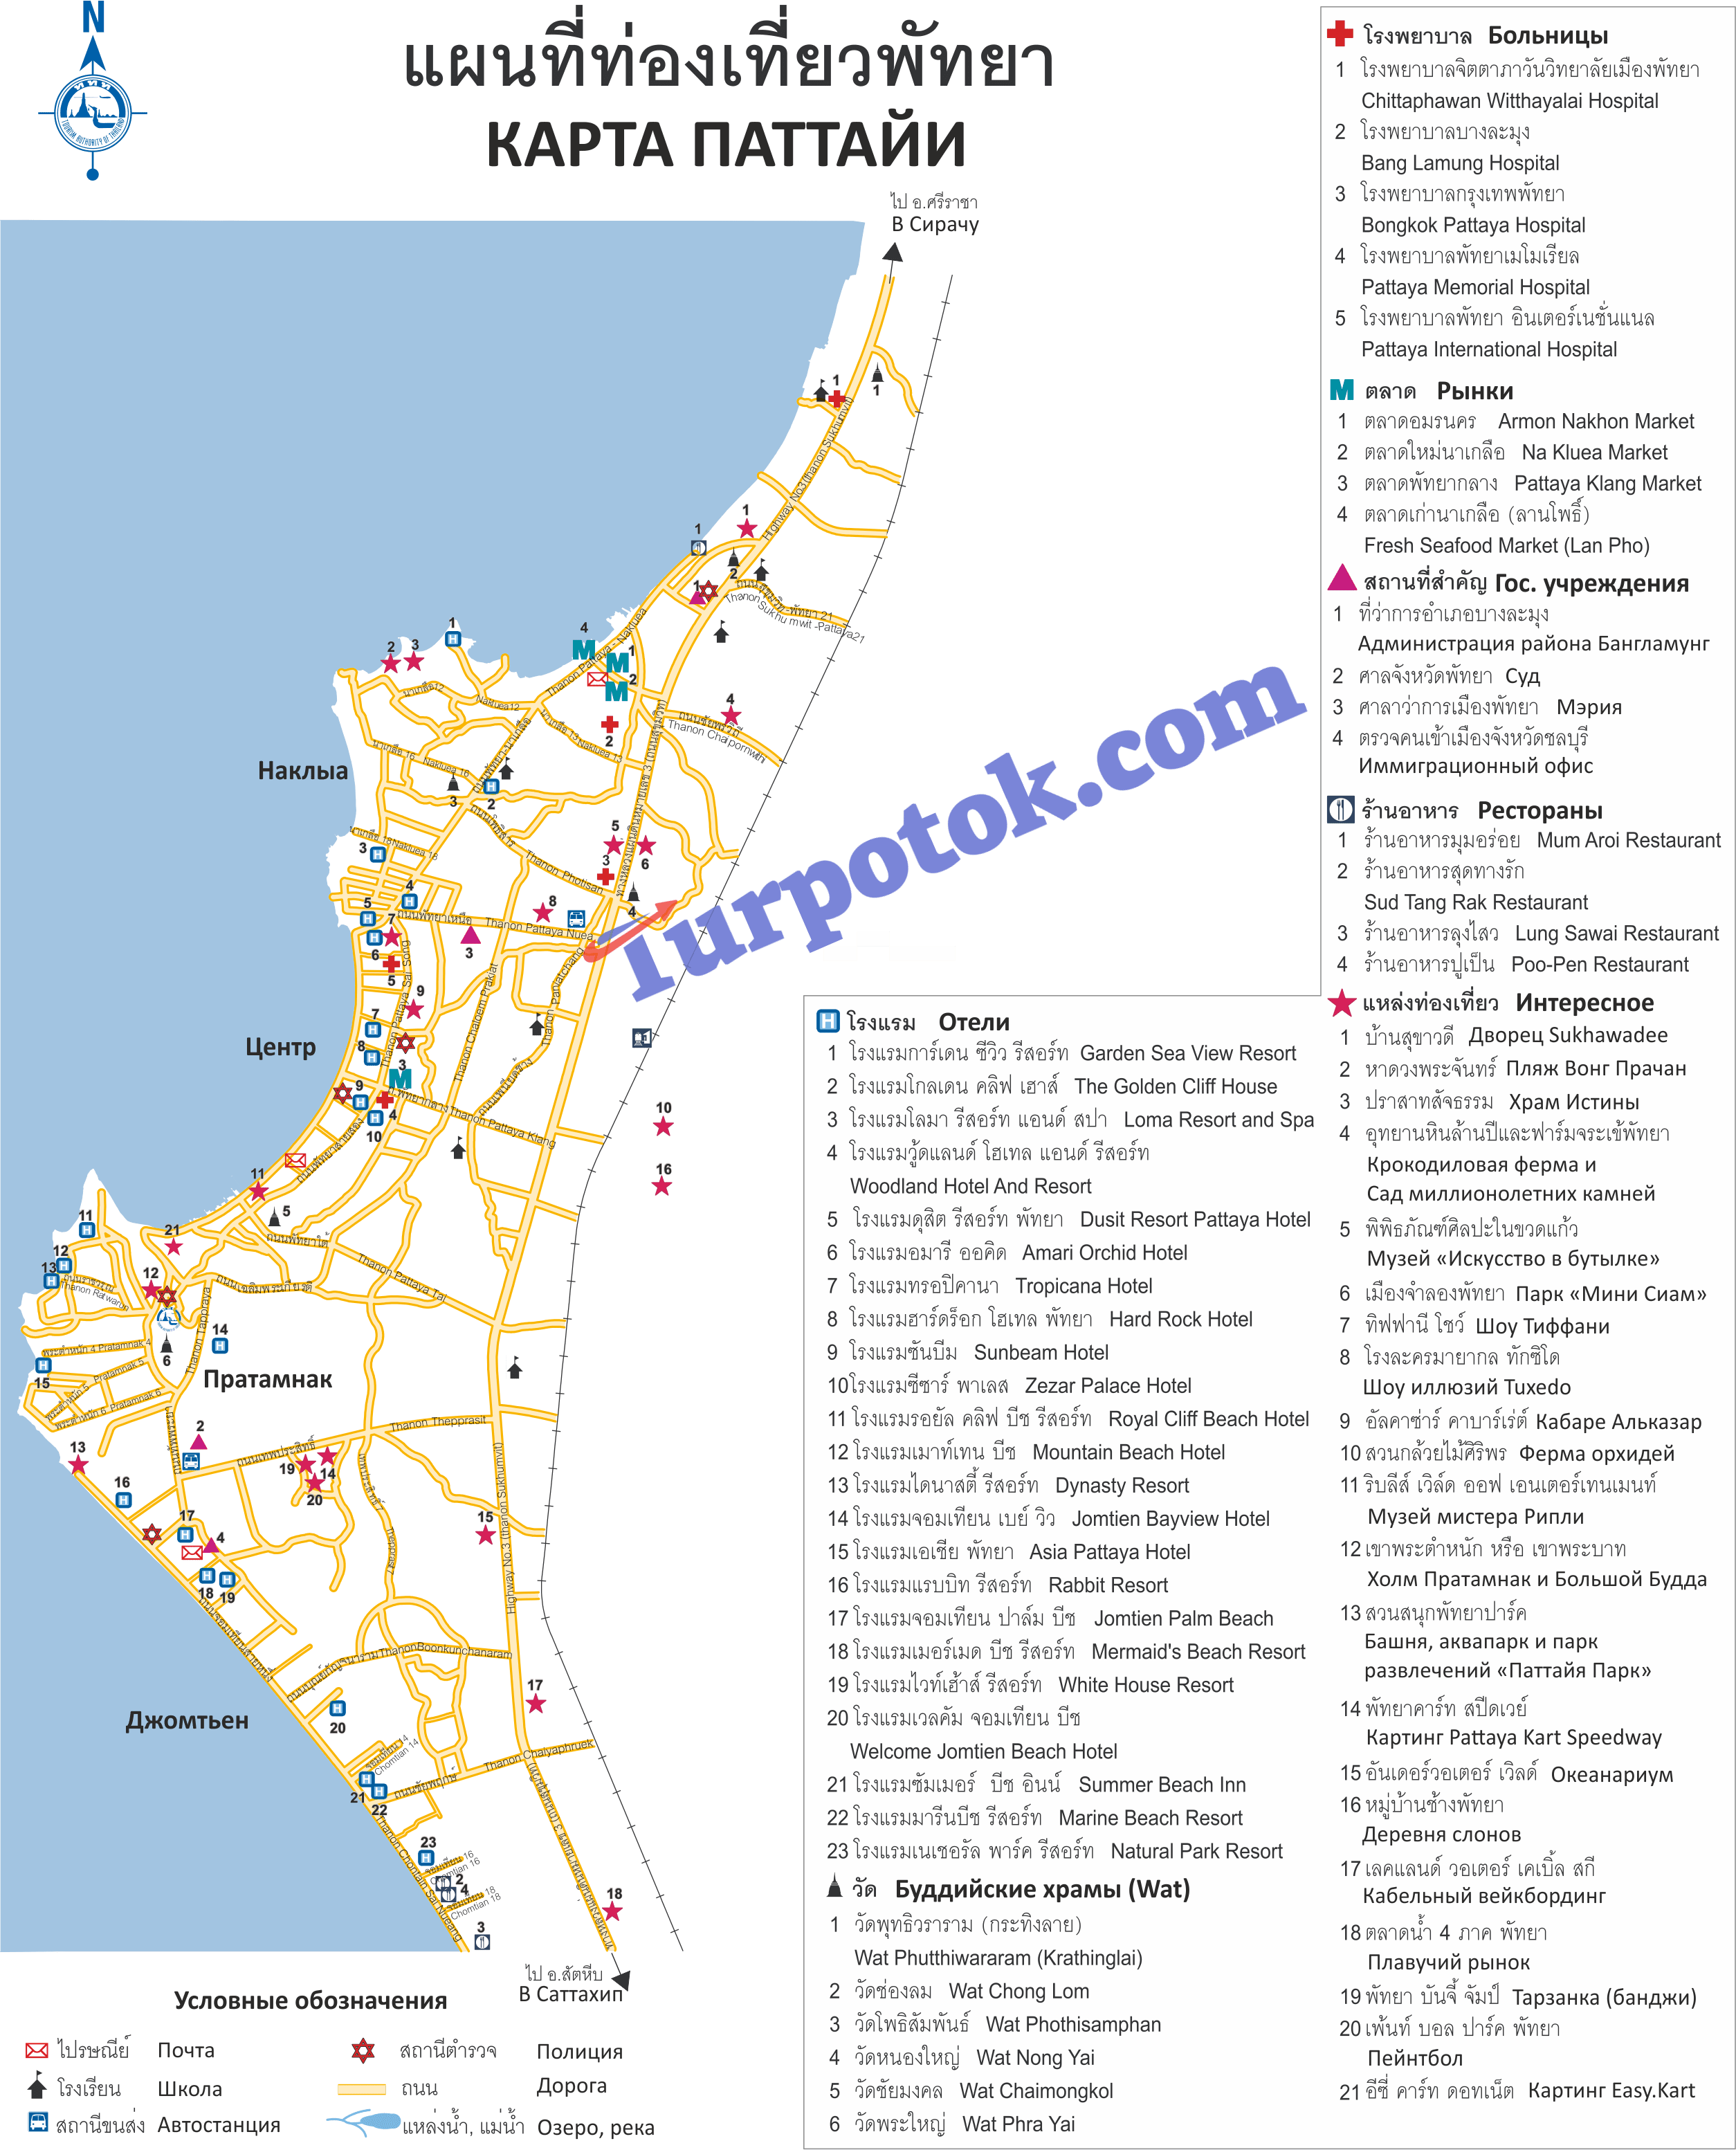 Карта достопримечательностей и отелей Паттайи